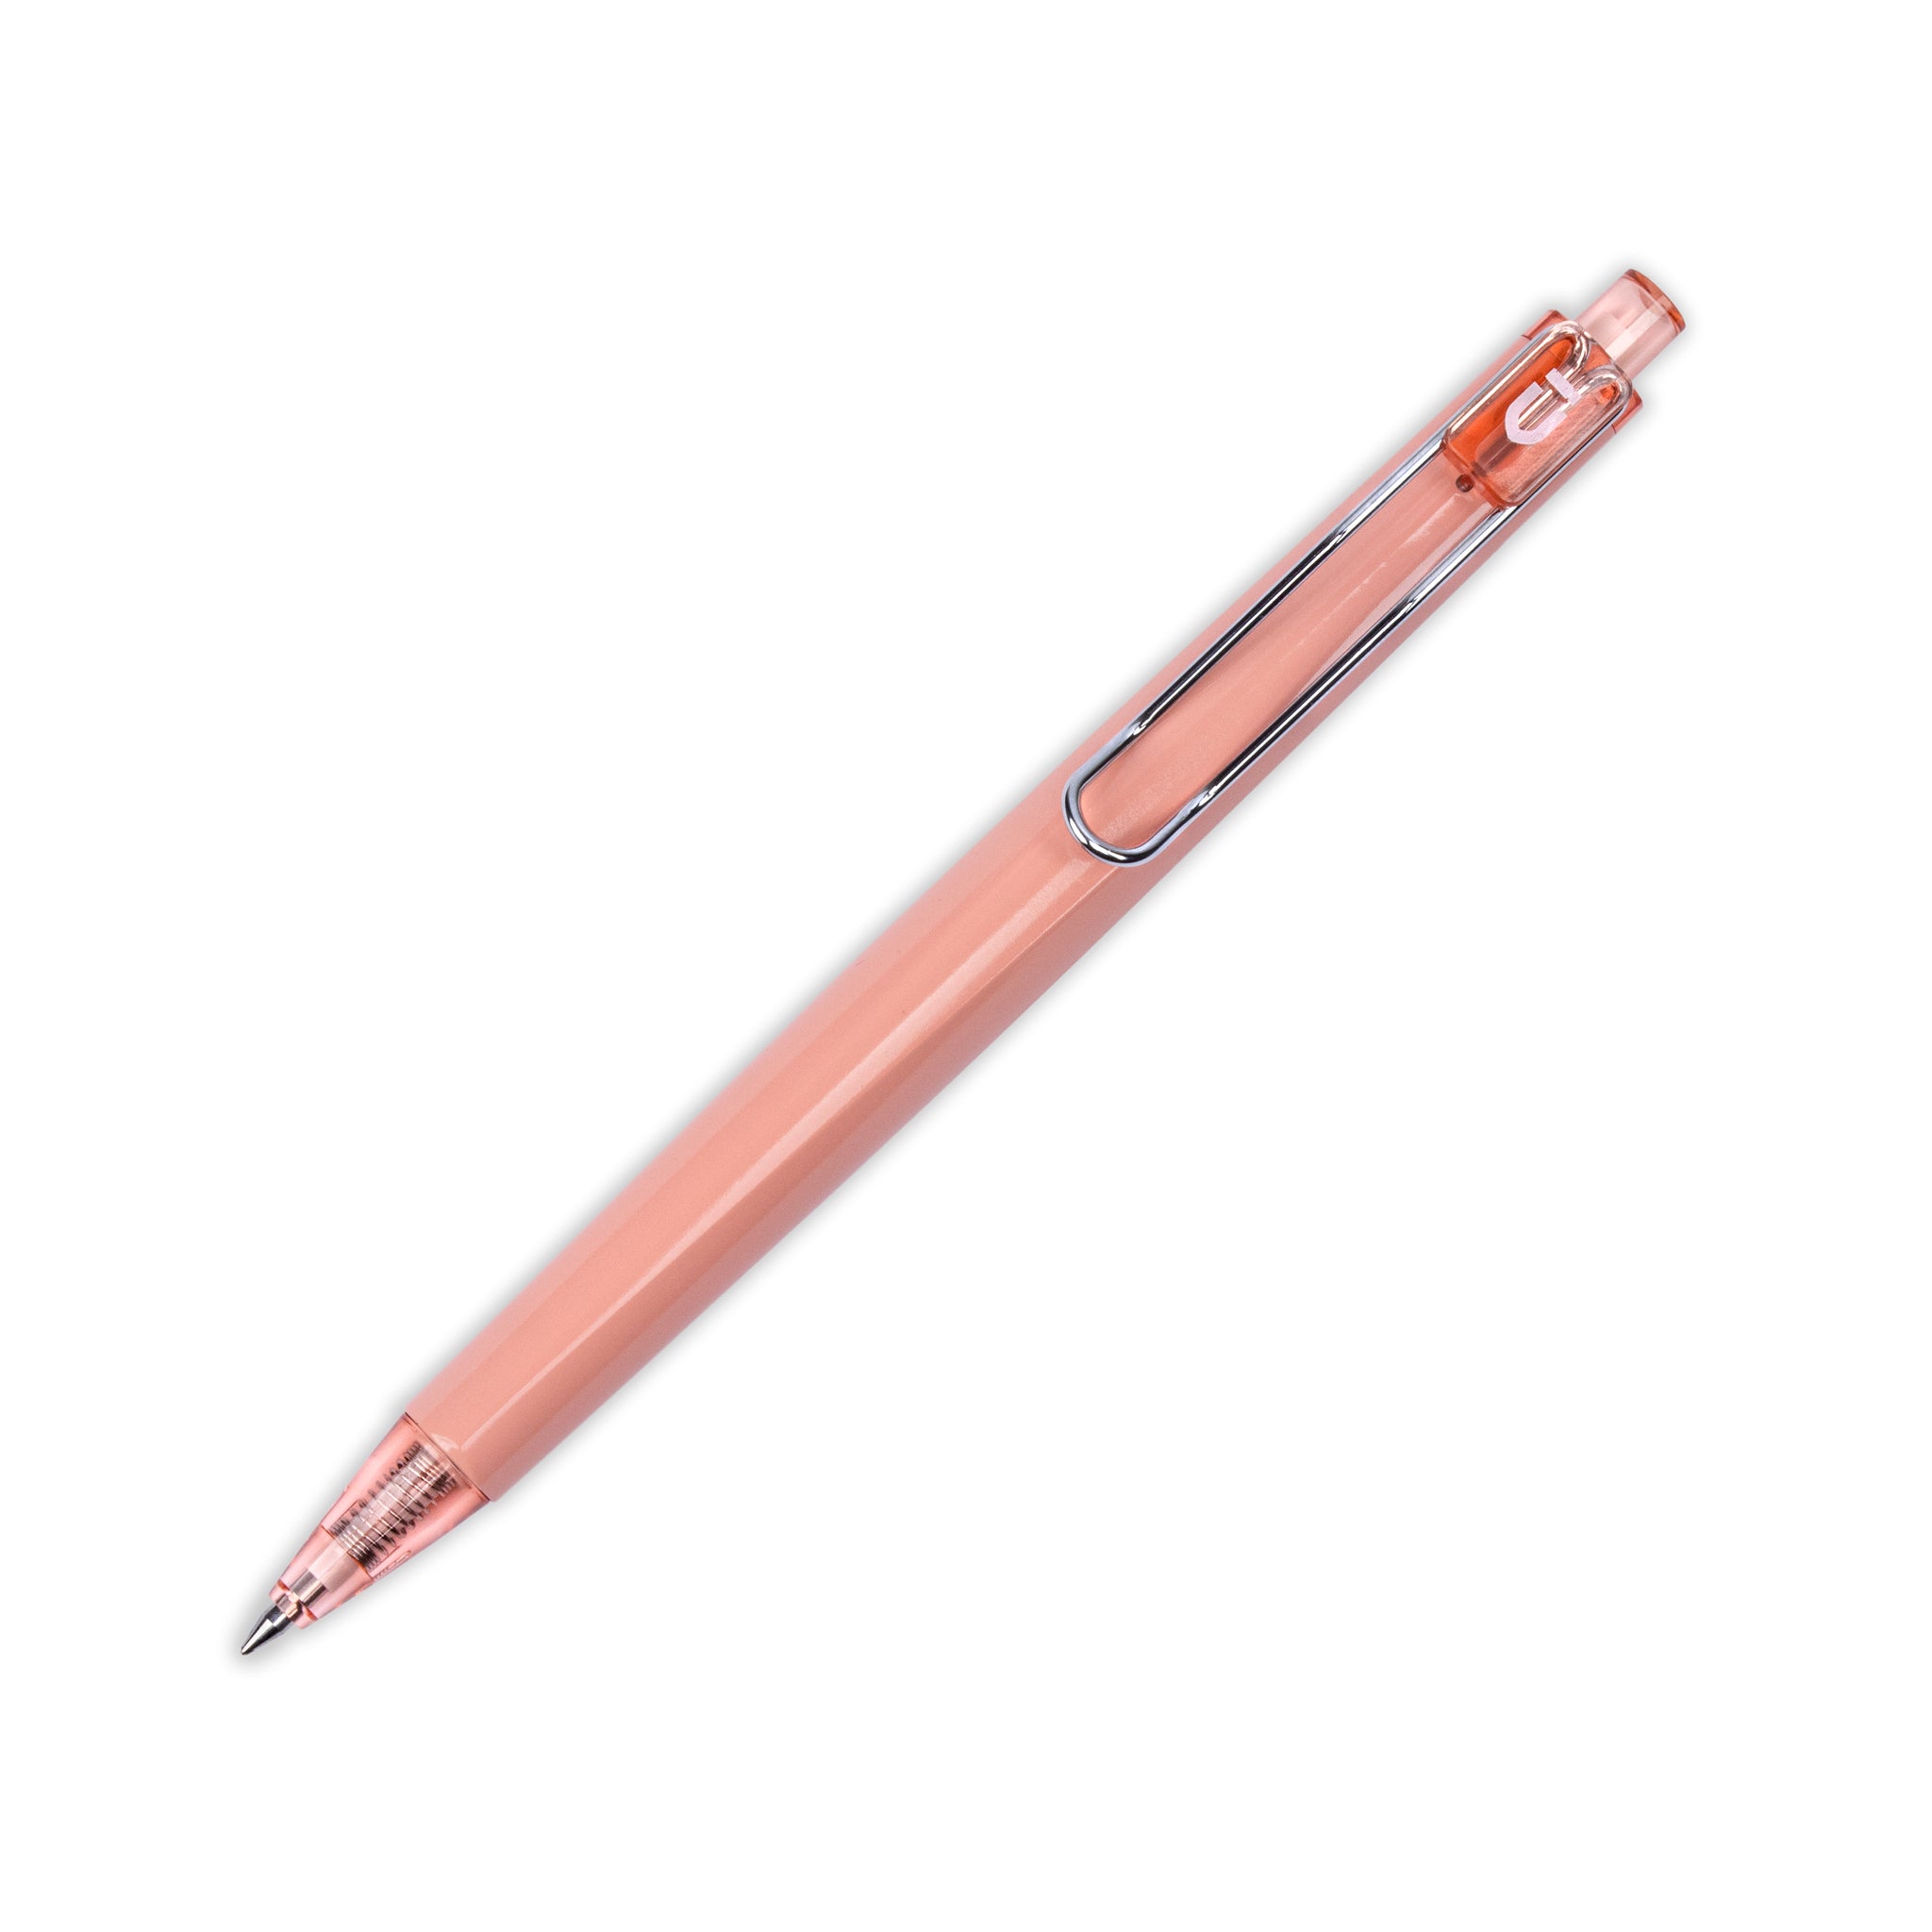 Bolígrafo de gel de color Morandi de M&G